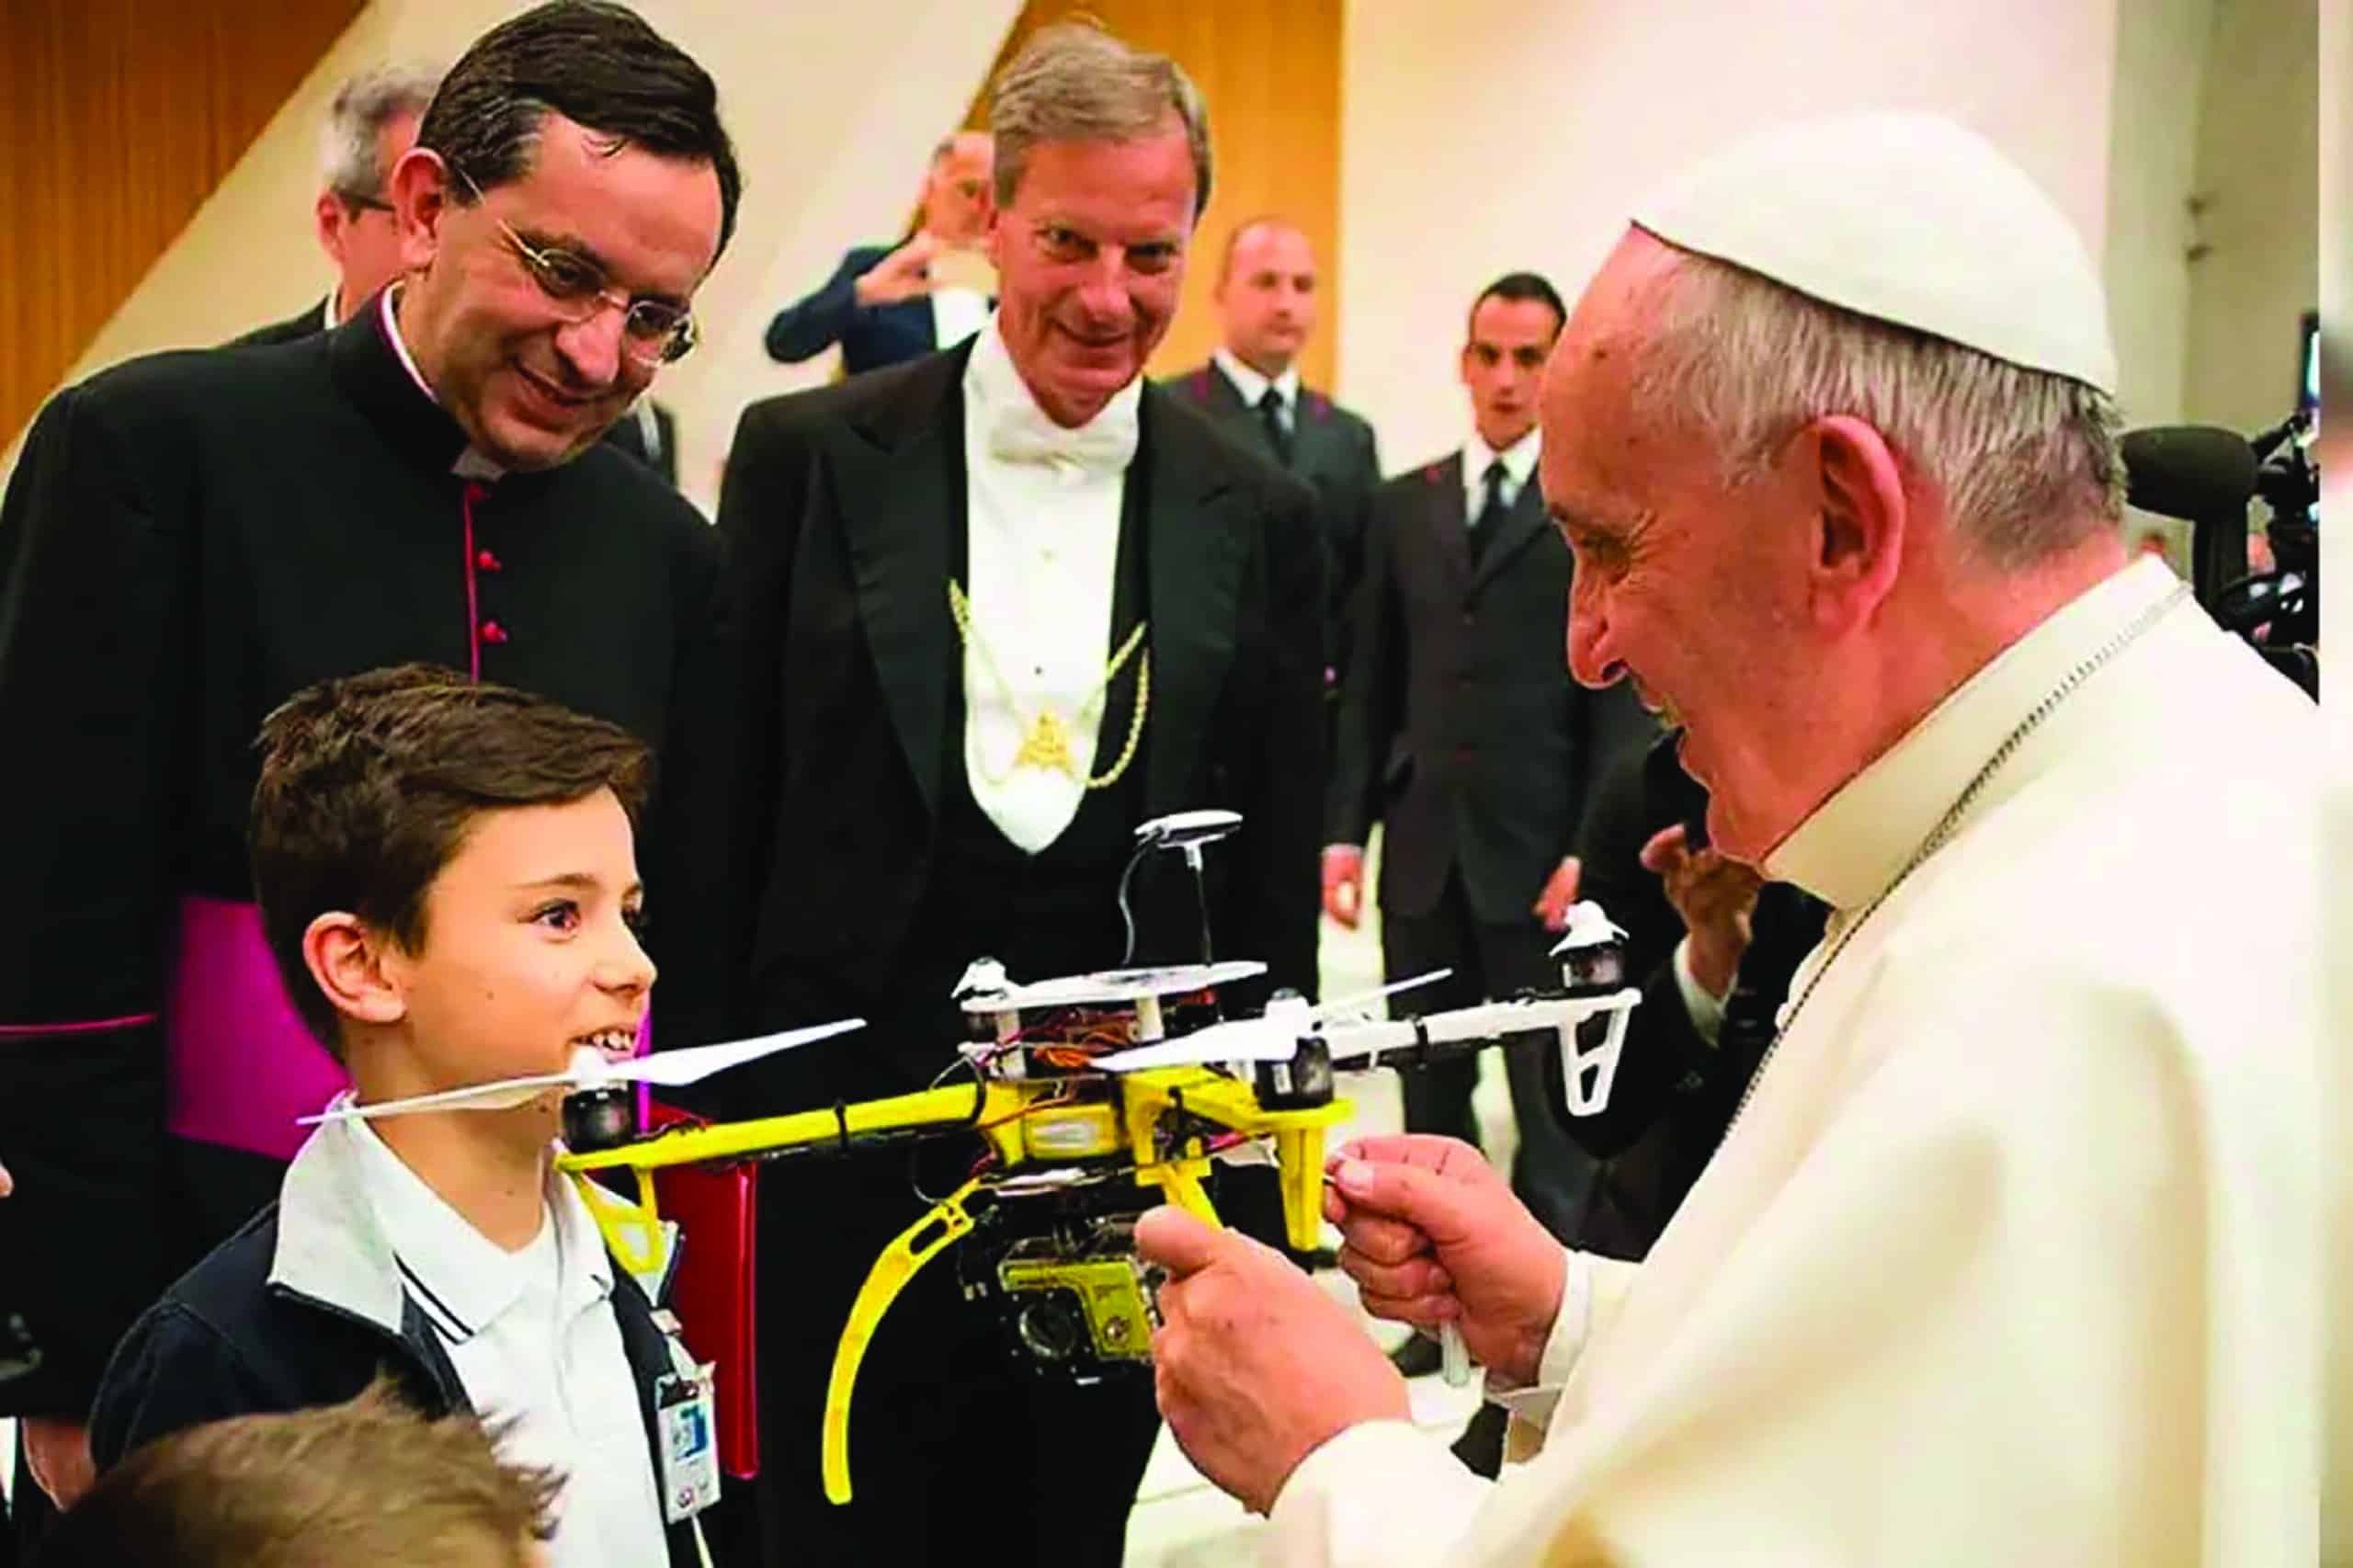 El Papa recibe de manos de un niño un Dron como regalo; lo especial de este es que fue hecho por alumnos de un colegio.